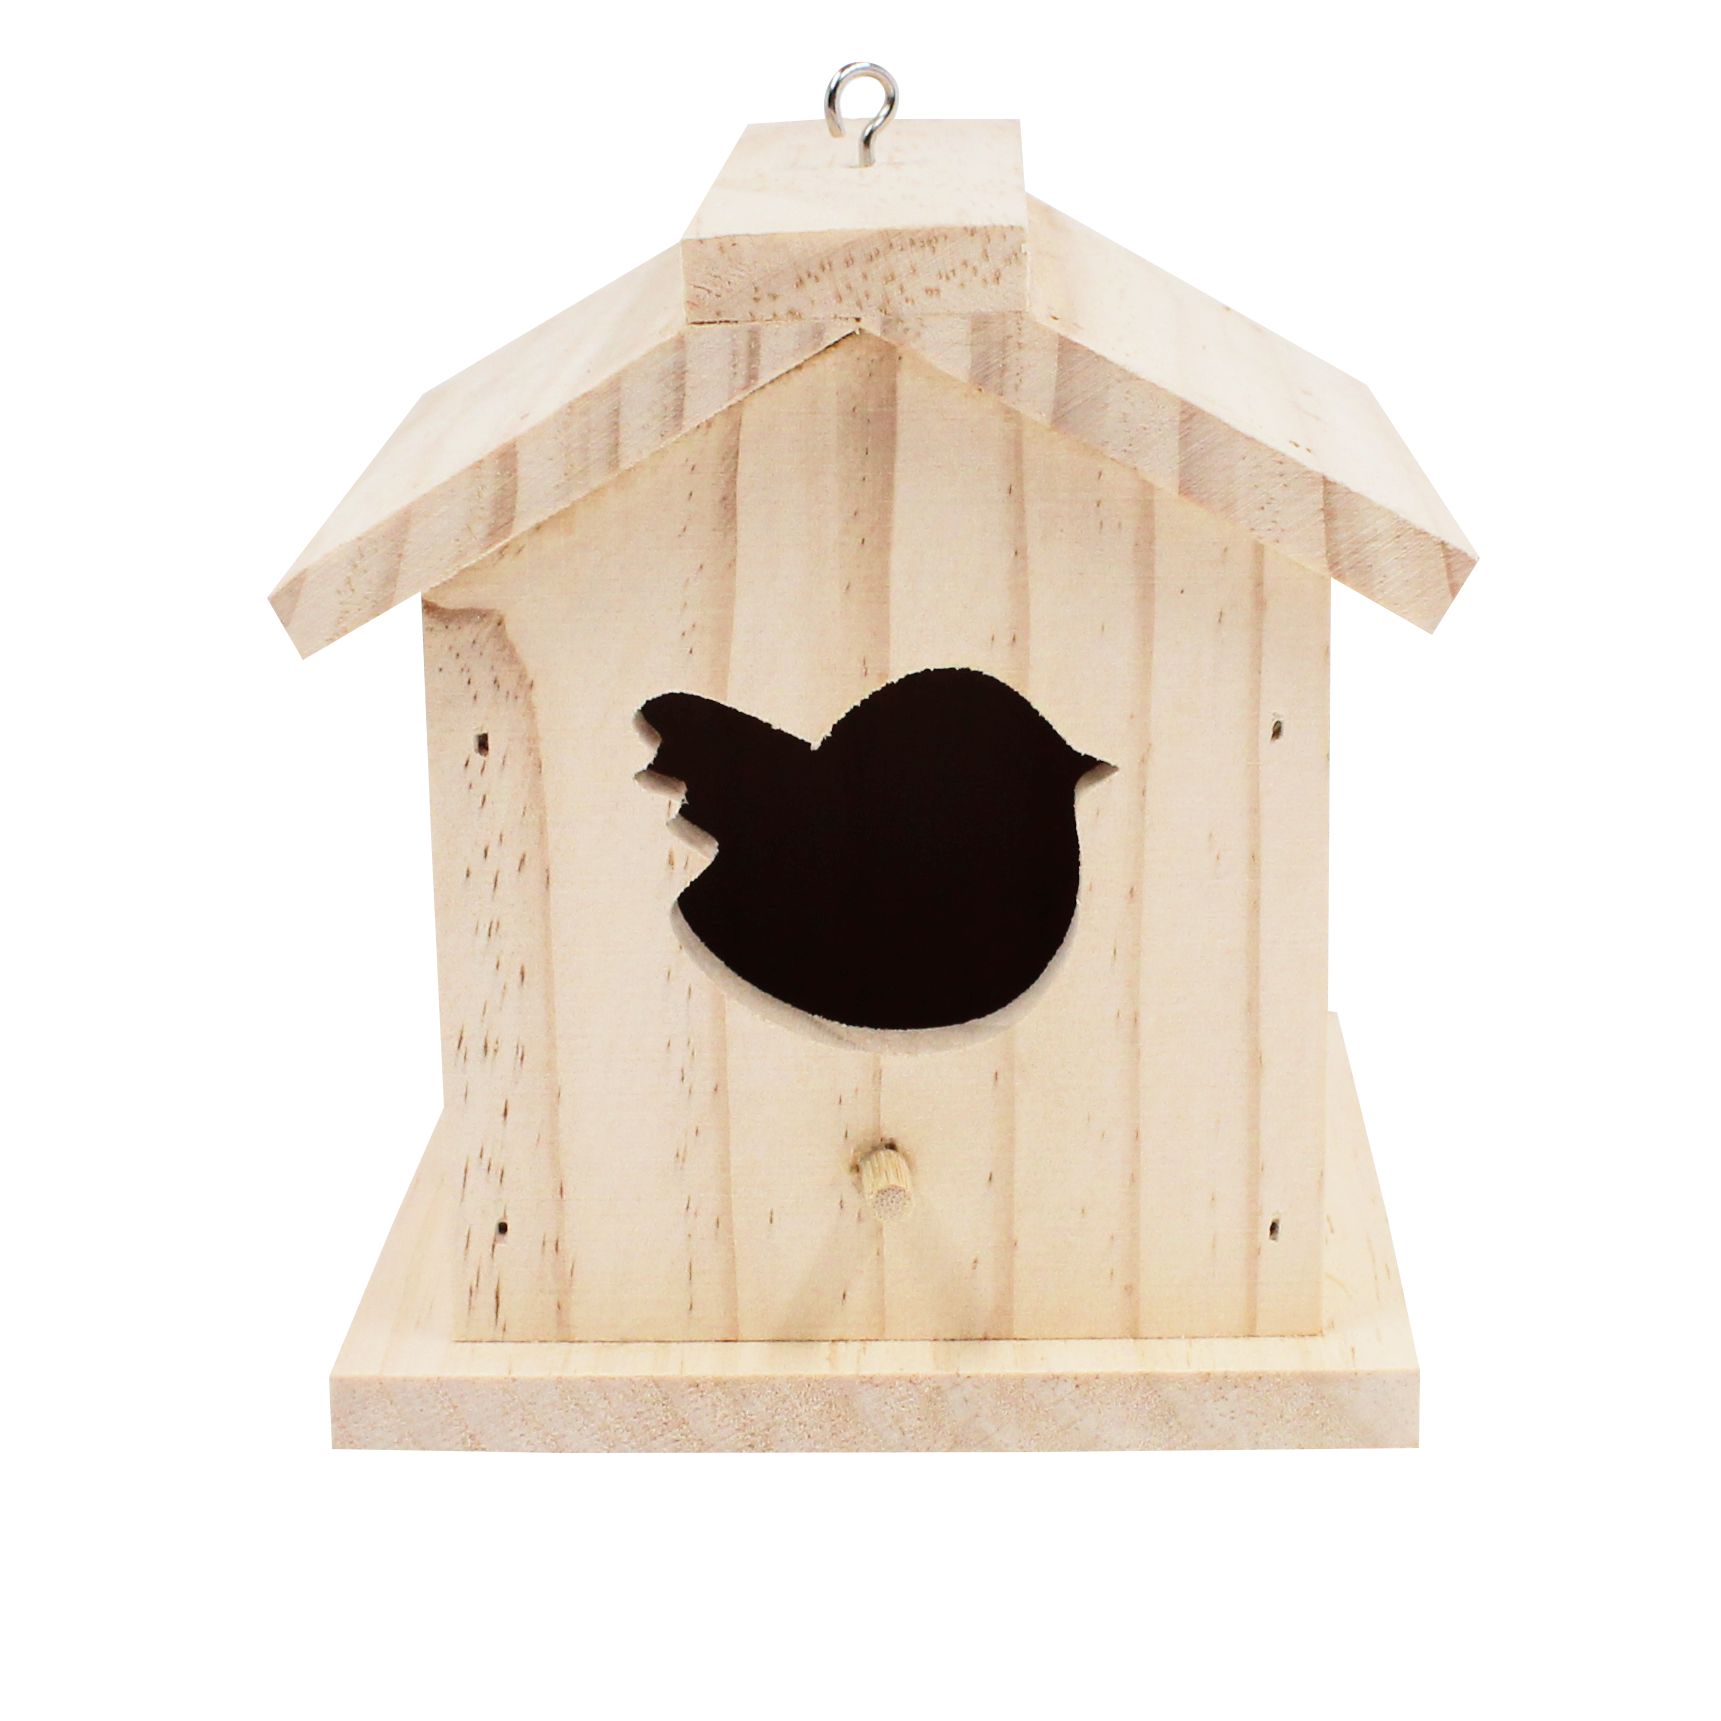 Vogelhaus 1 DIY aus Holz